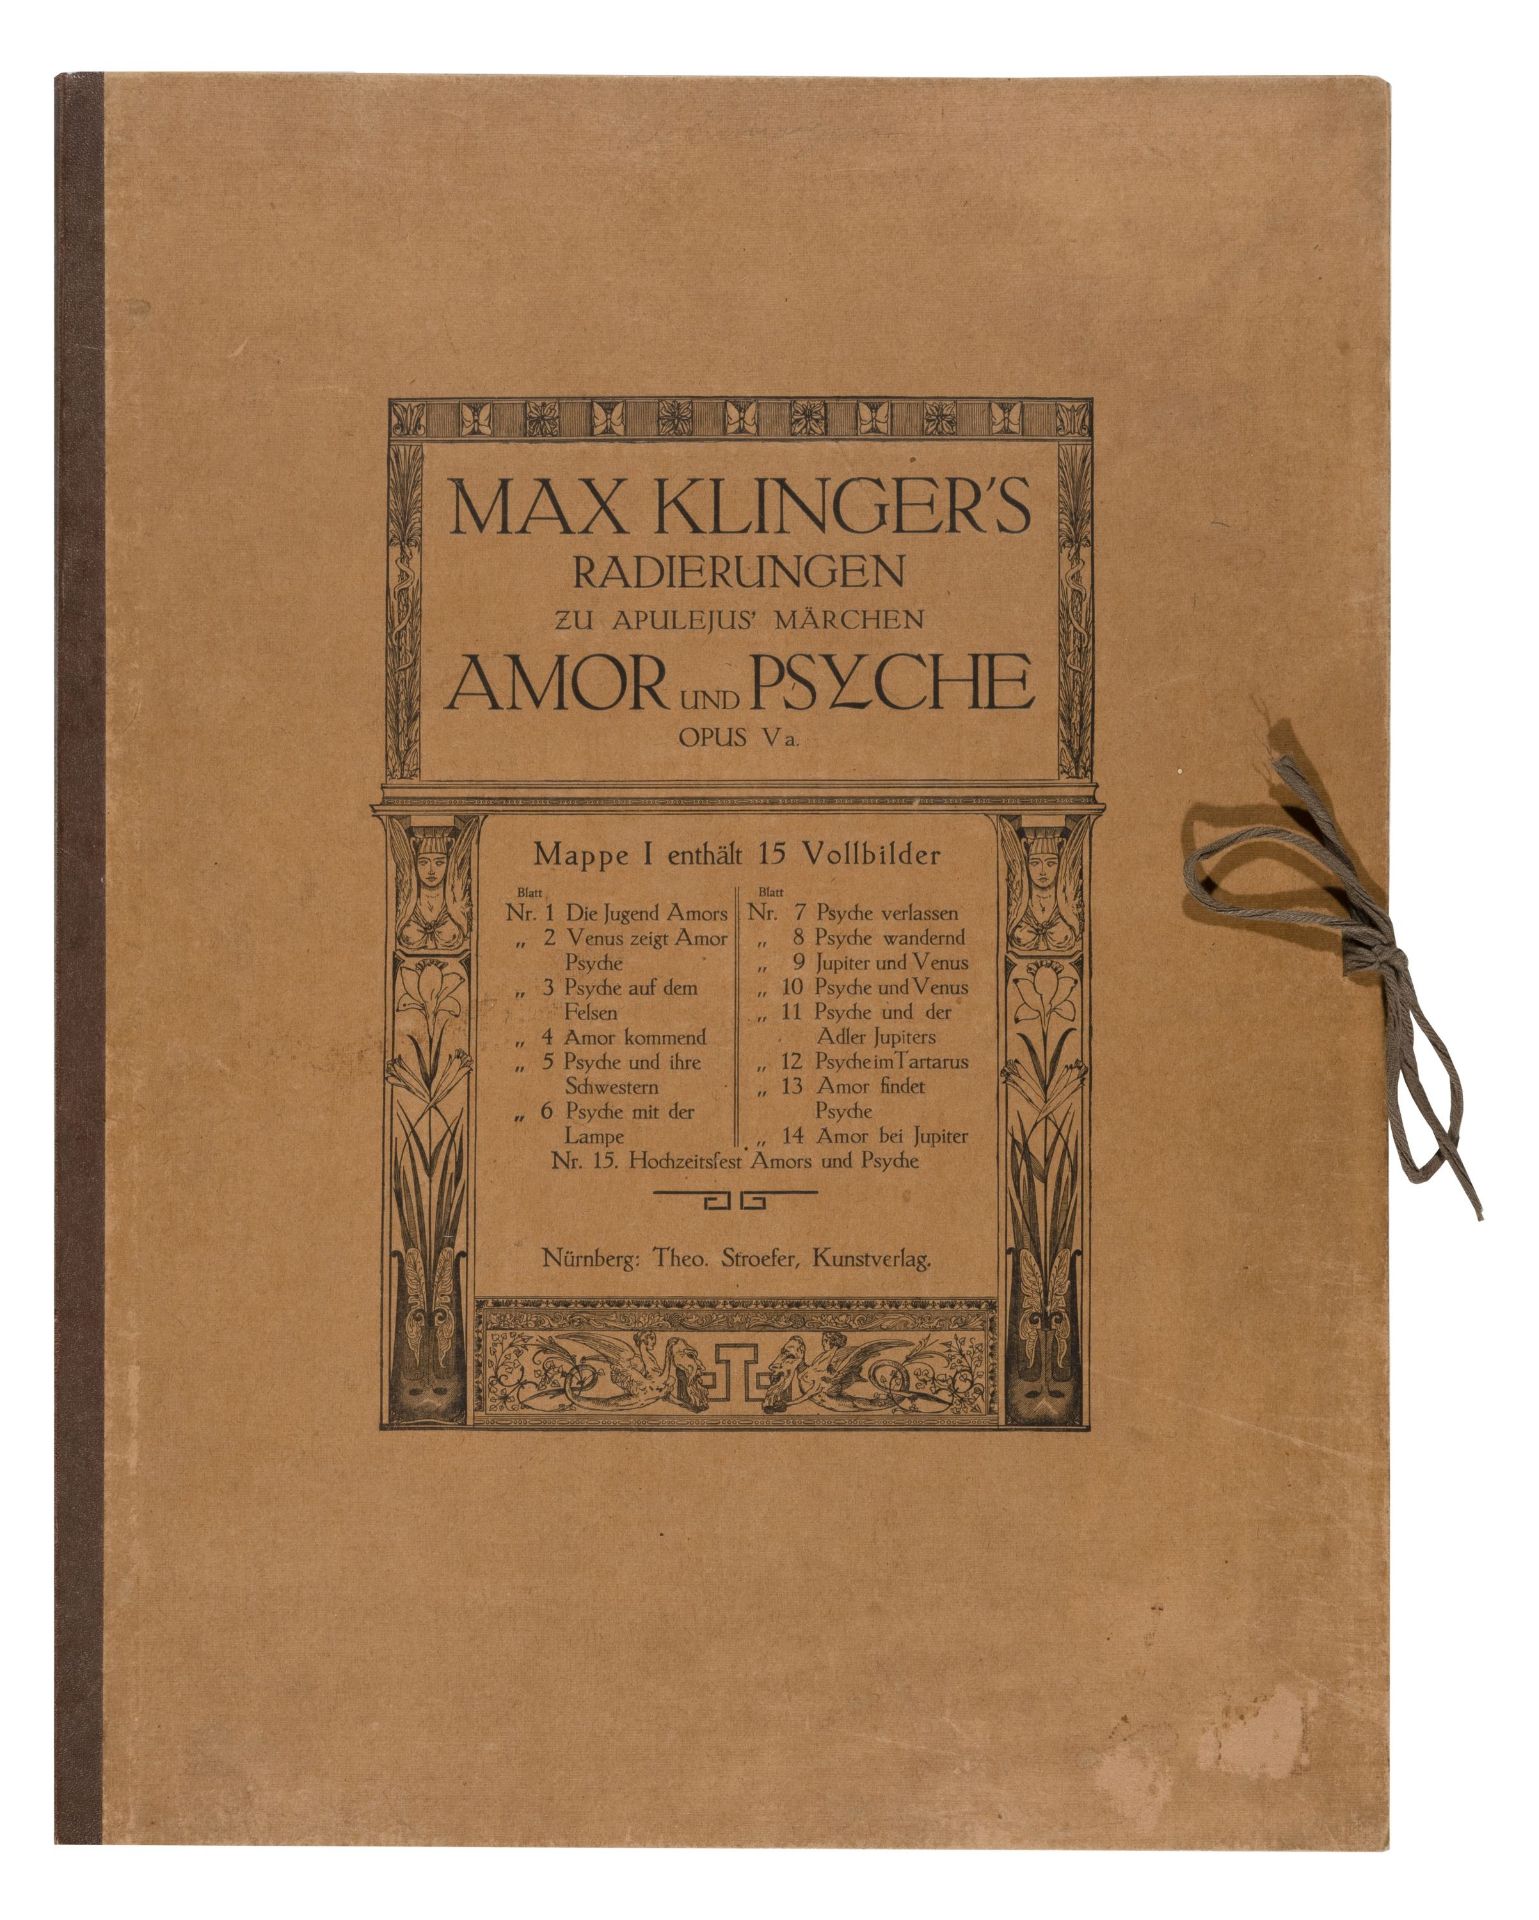 Max Klinger "Radierungen zu Apulejus' Märchen Amor und Psyche. Opus V a". 1880.